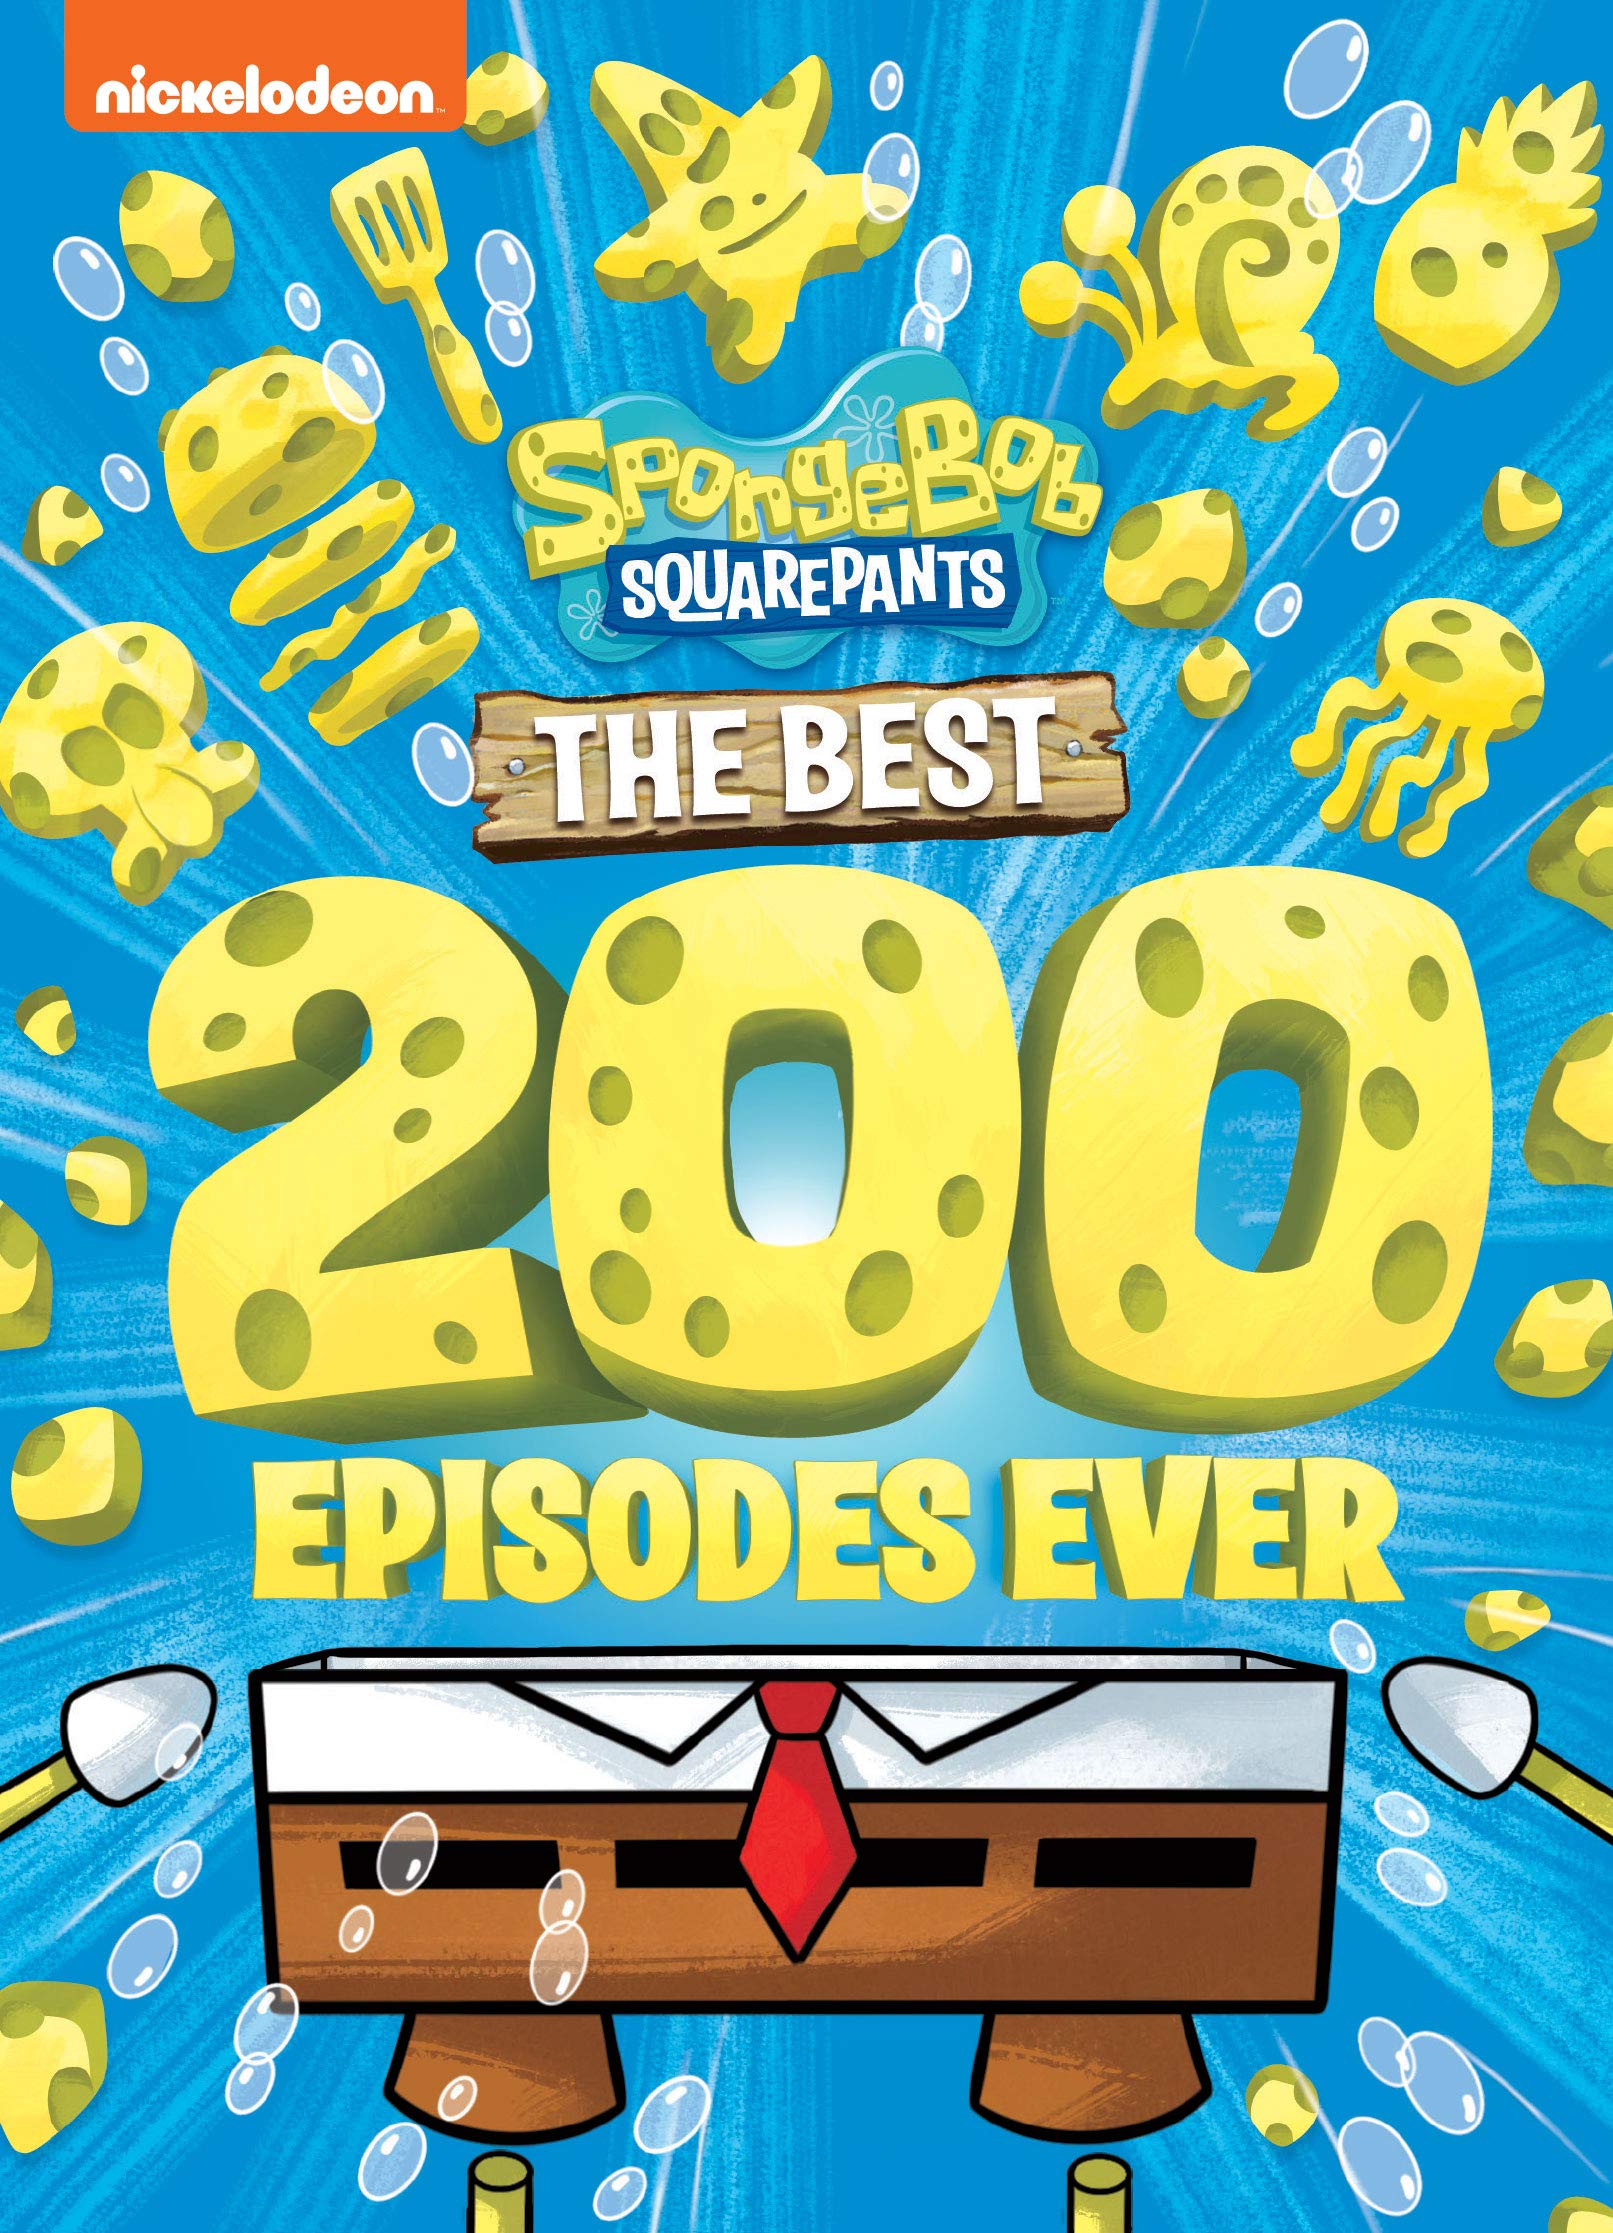 Can You Spare A Dime Spongebob Wiki The Best 200 Episodes Ever Encyclopedia Spongebobia Fandom